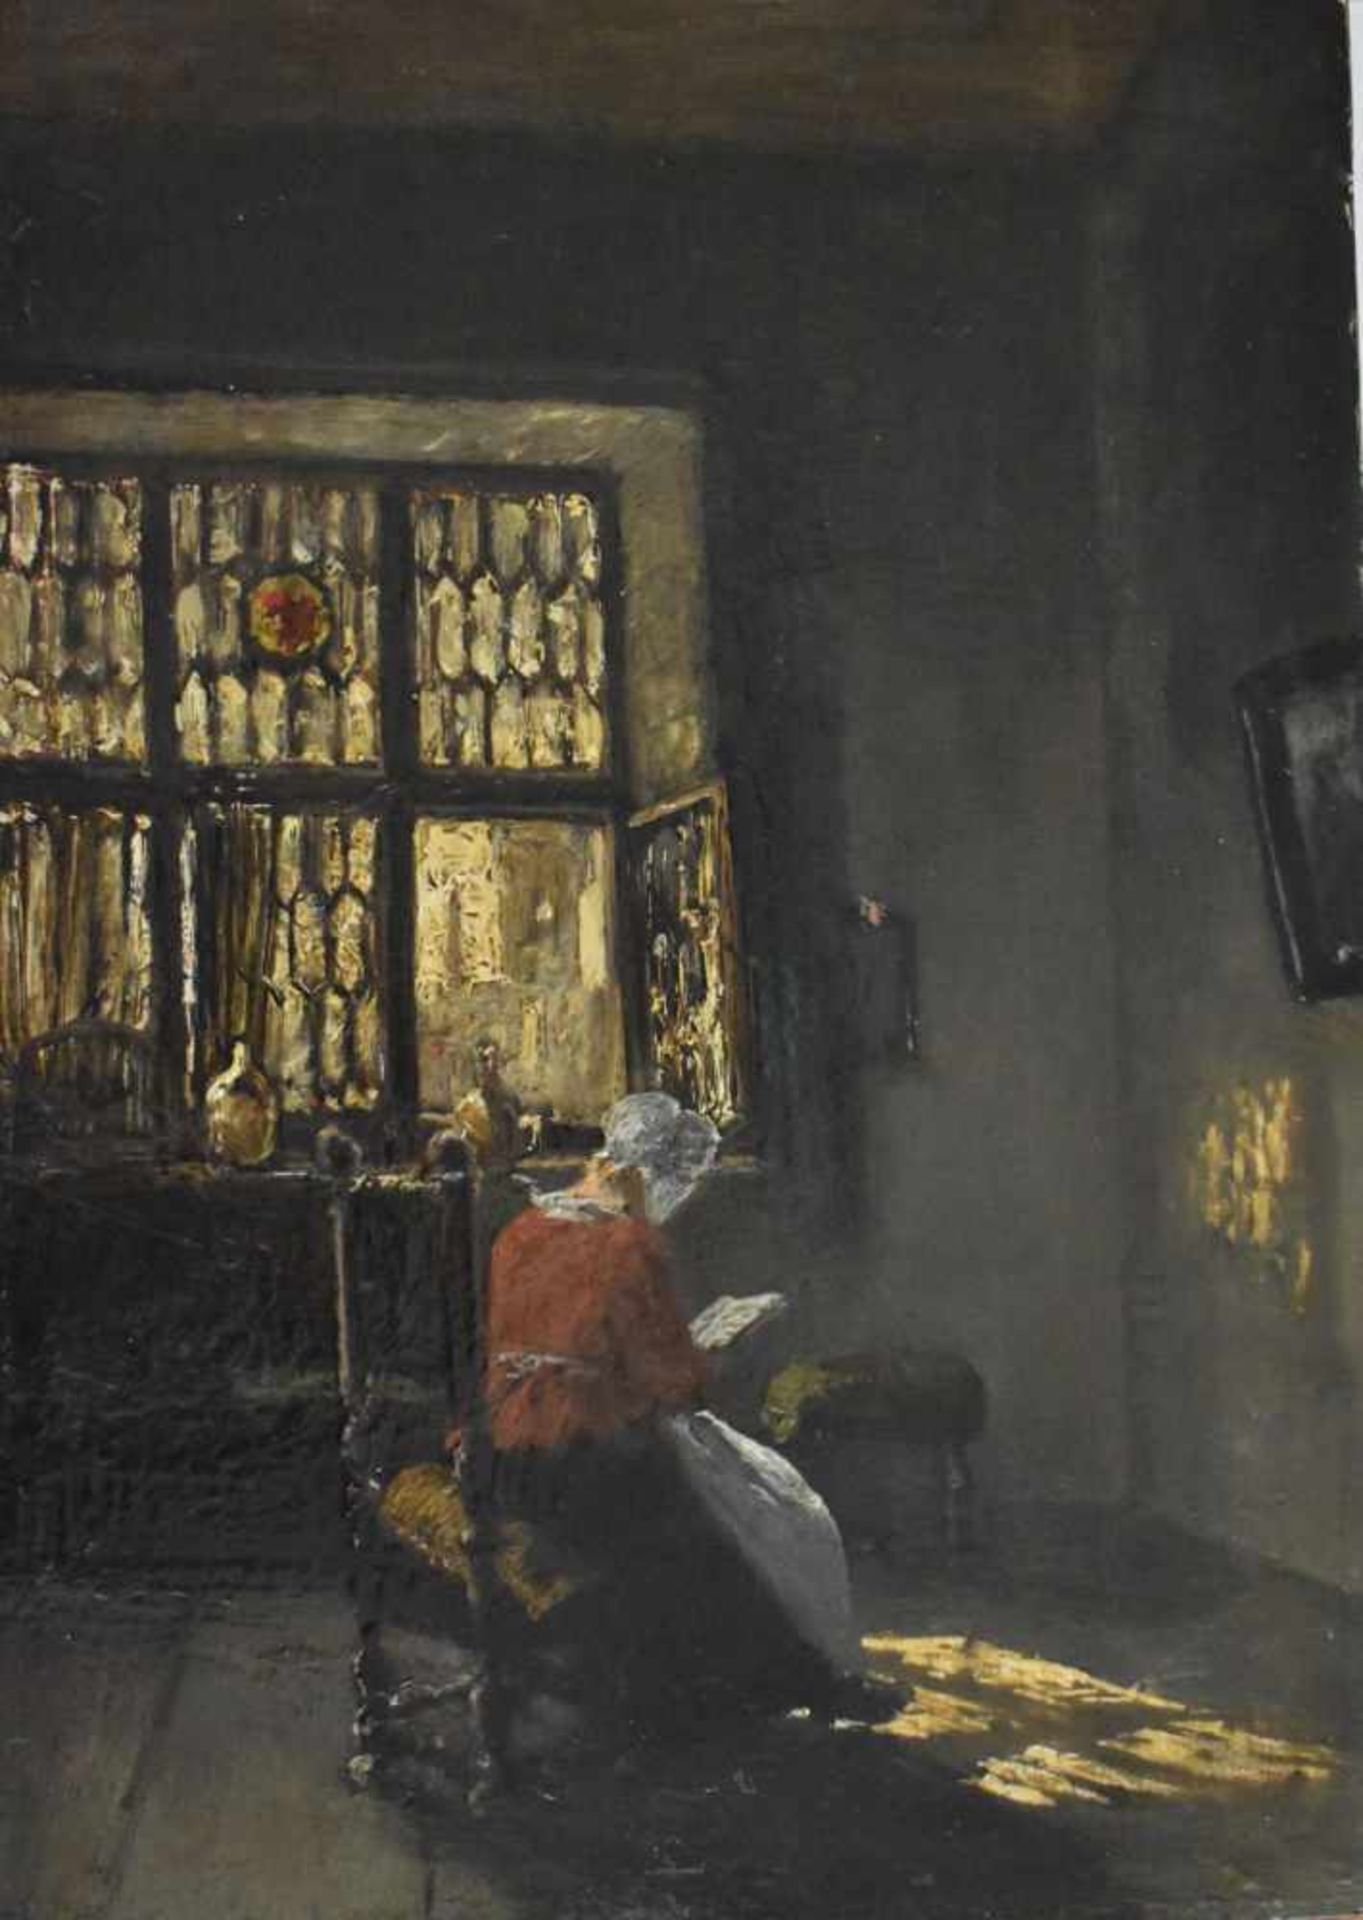 Wenglein, Josef (1845 - 1919), "In der holländischen Stube"